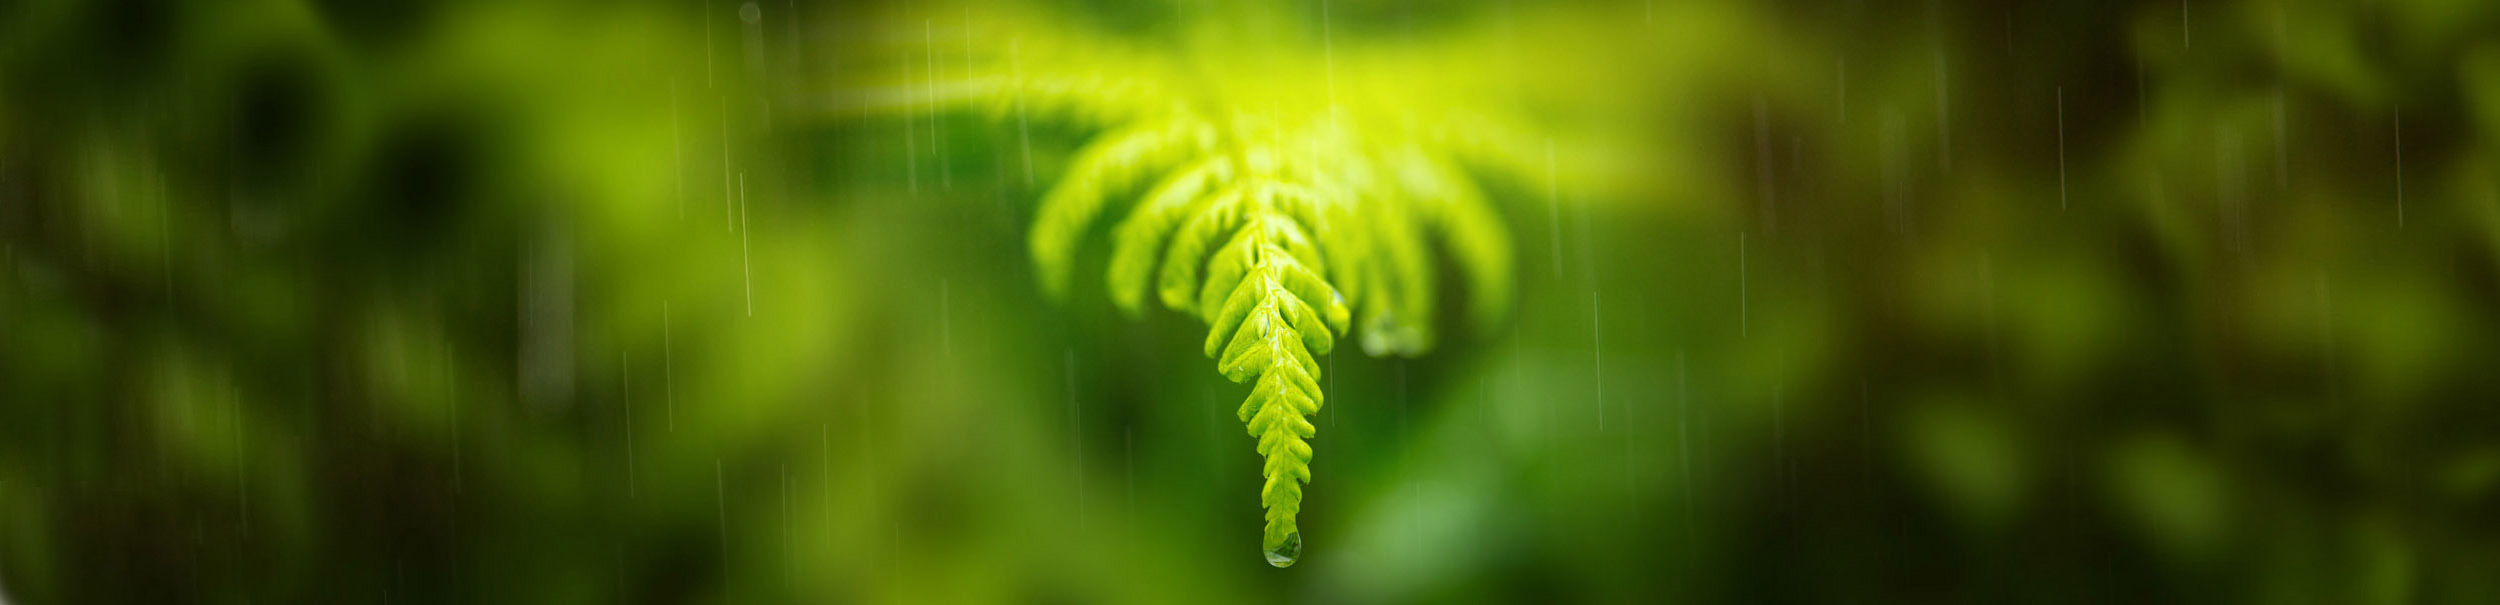 Rain on ferns